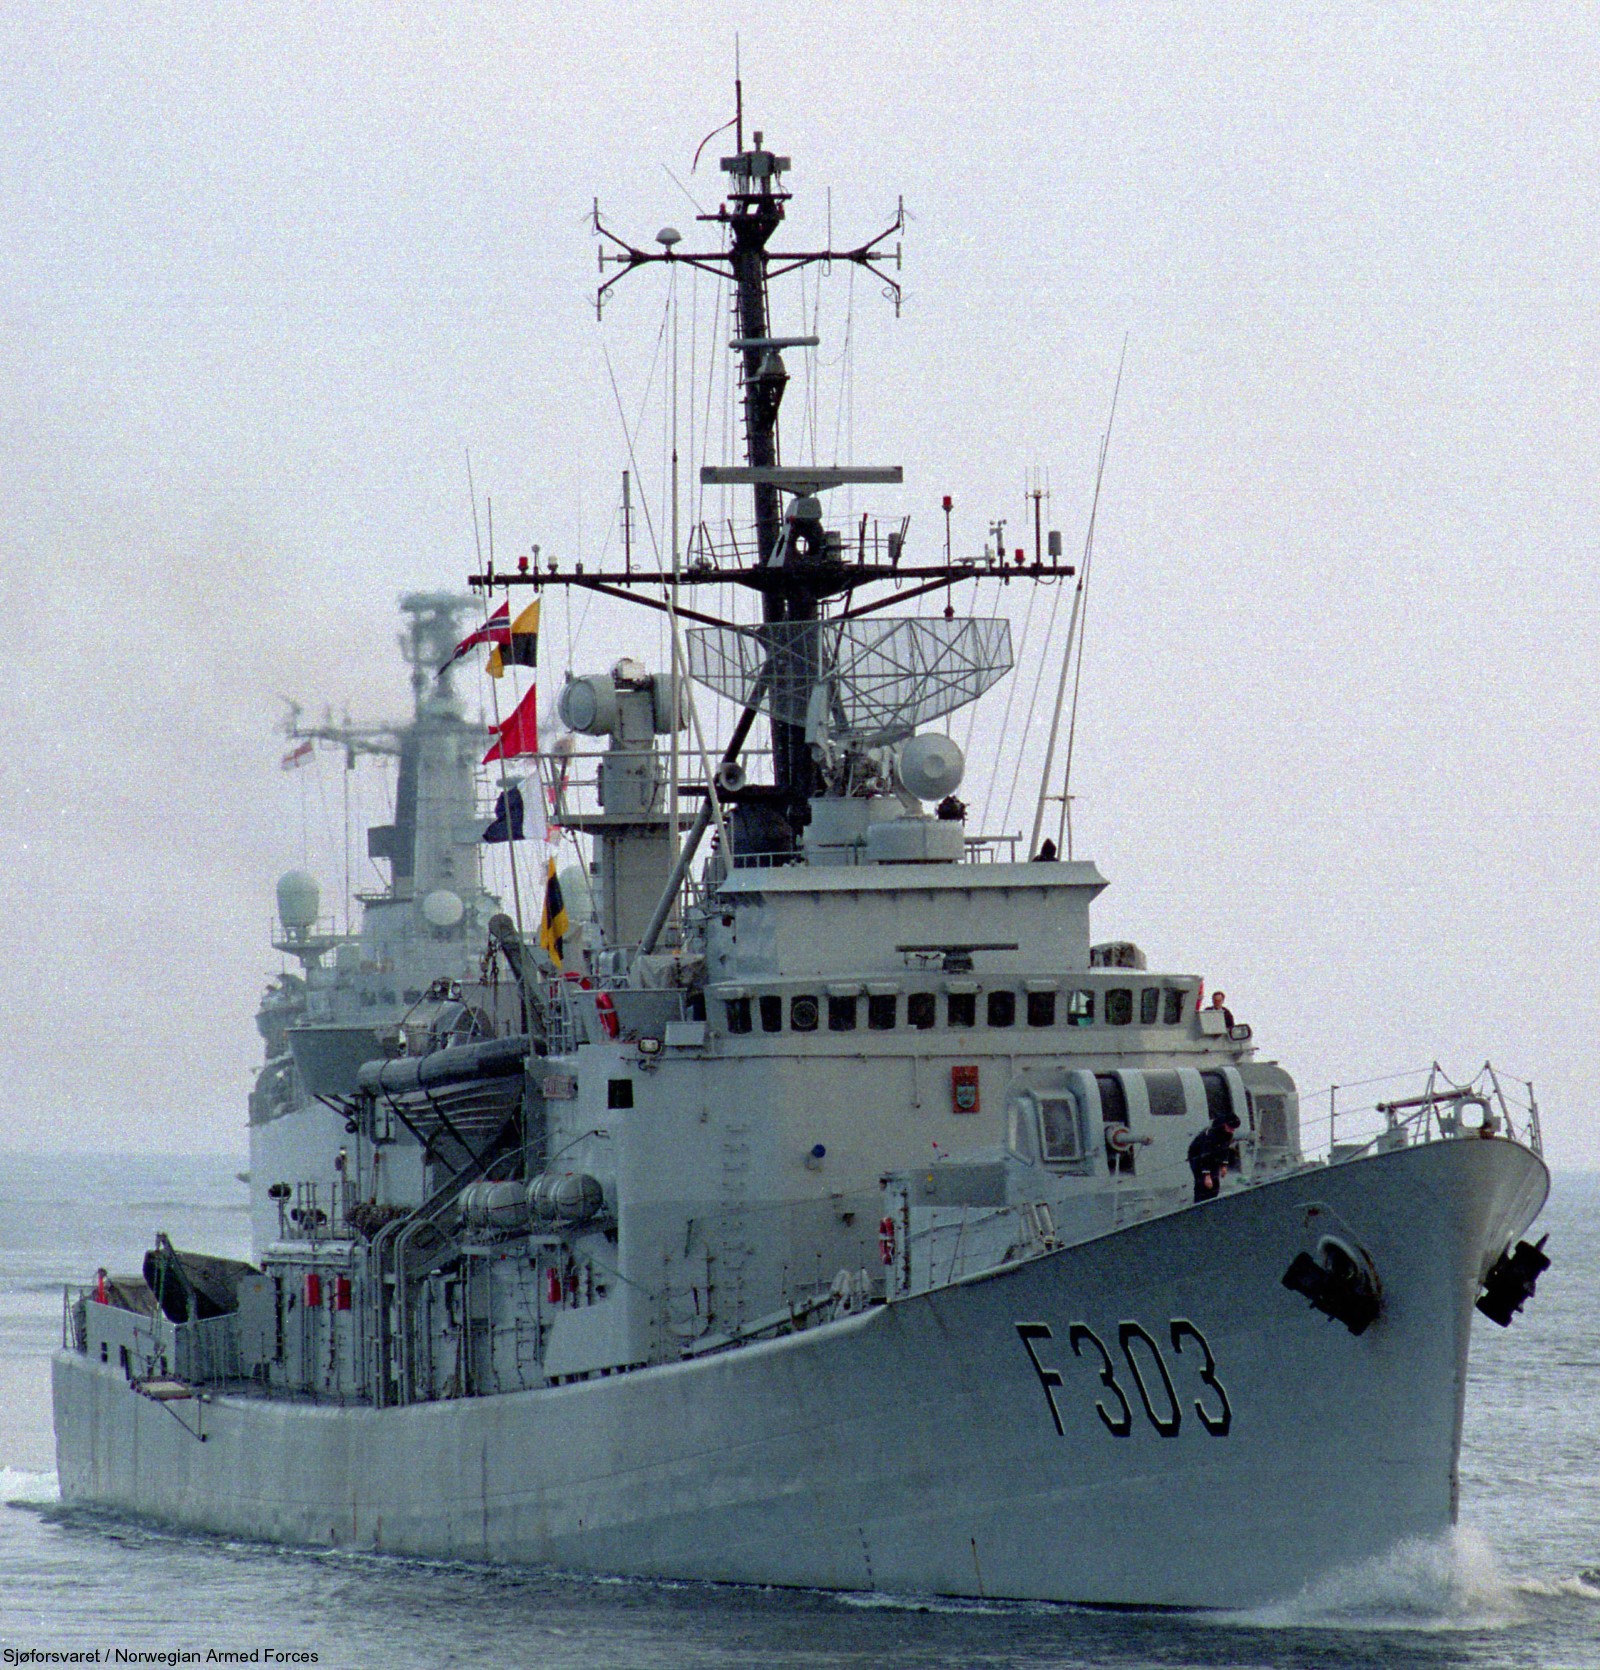 f-303 hnoms stavanger knm oslo class frigate royal norwegian navy sjoforsvaret 07